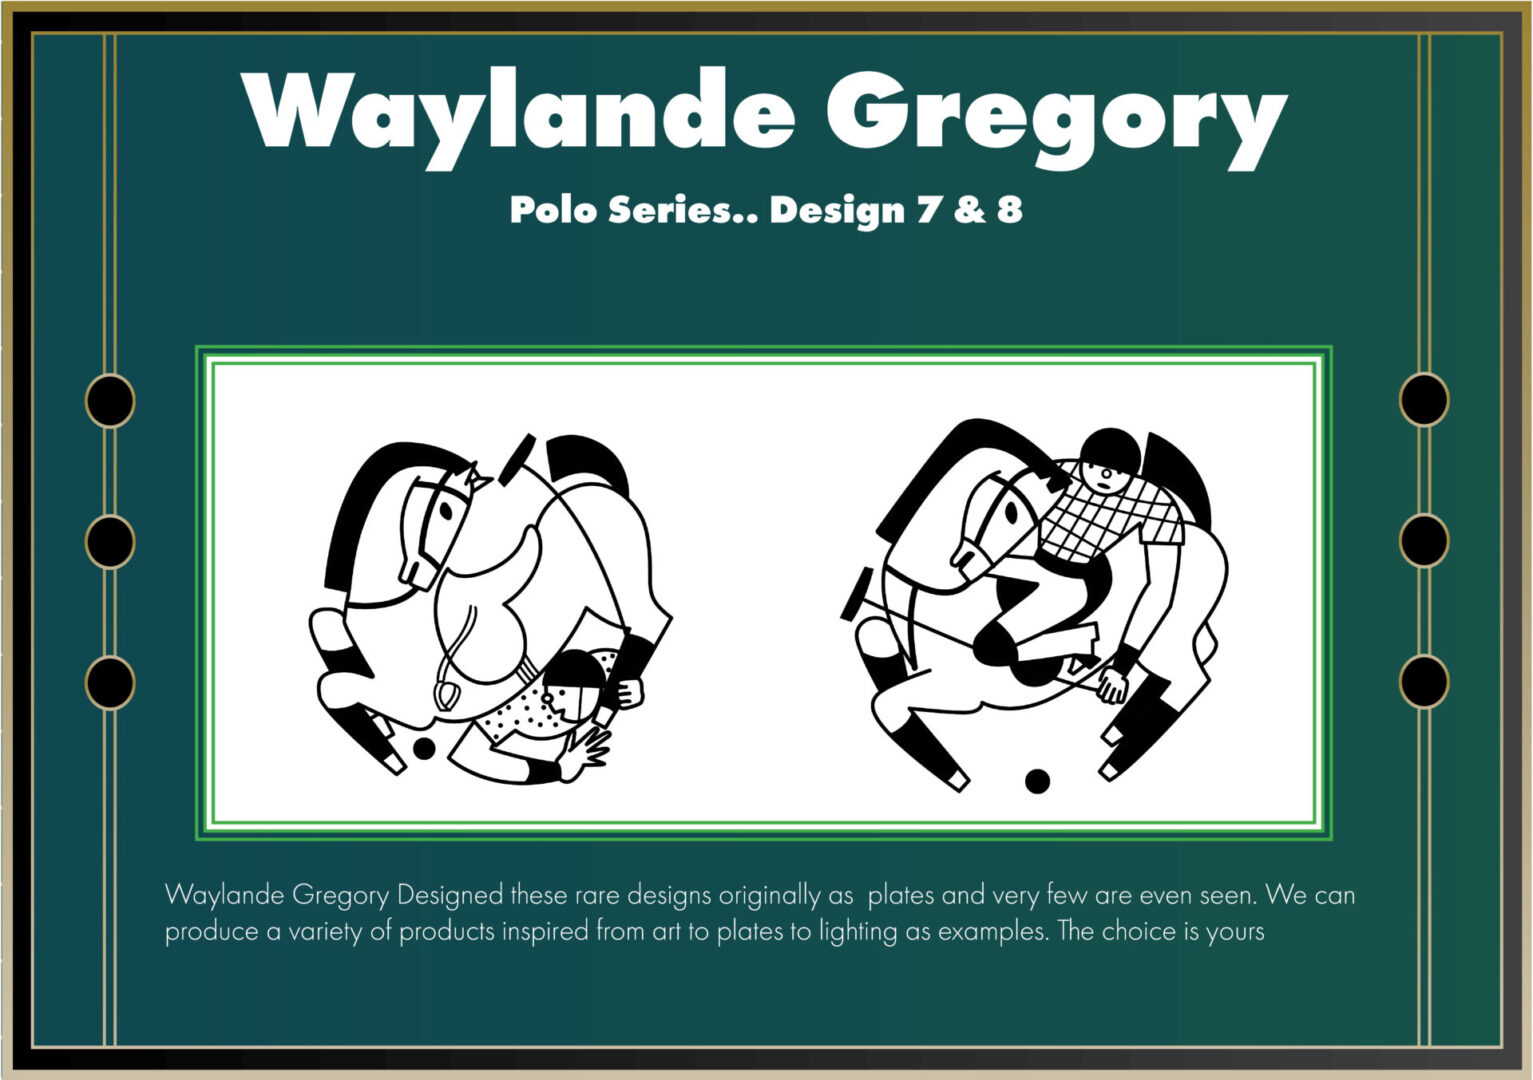 Polo Series Rare Designs by Waylande Desantis Gregory